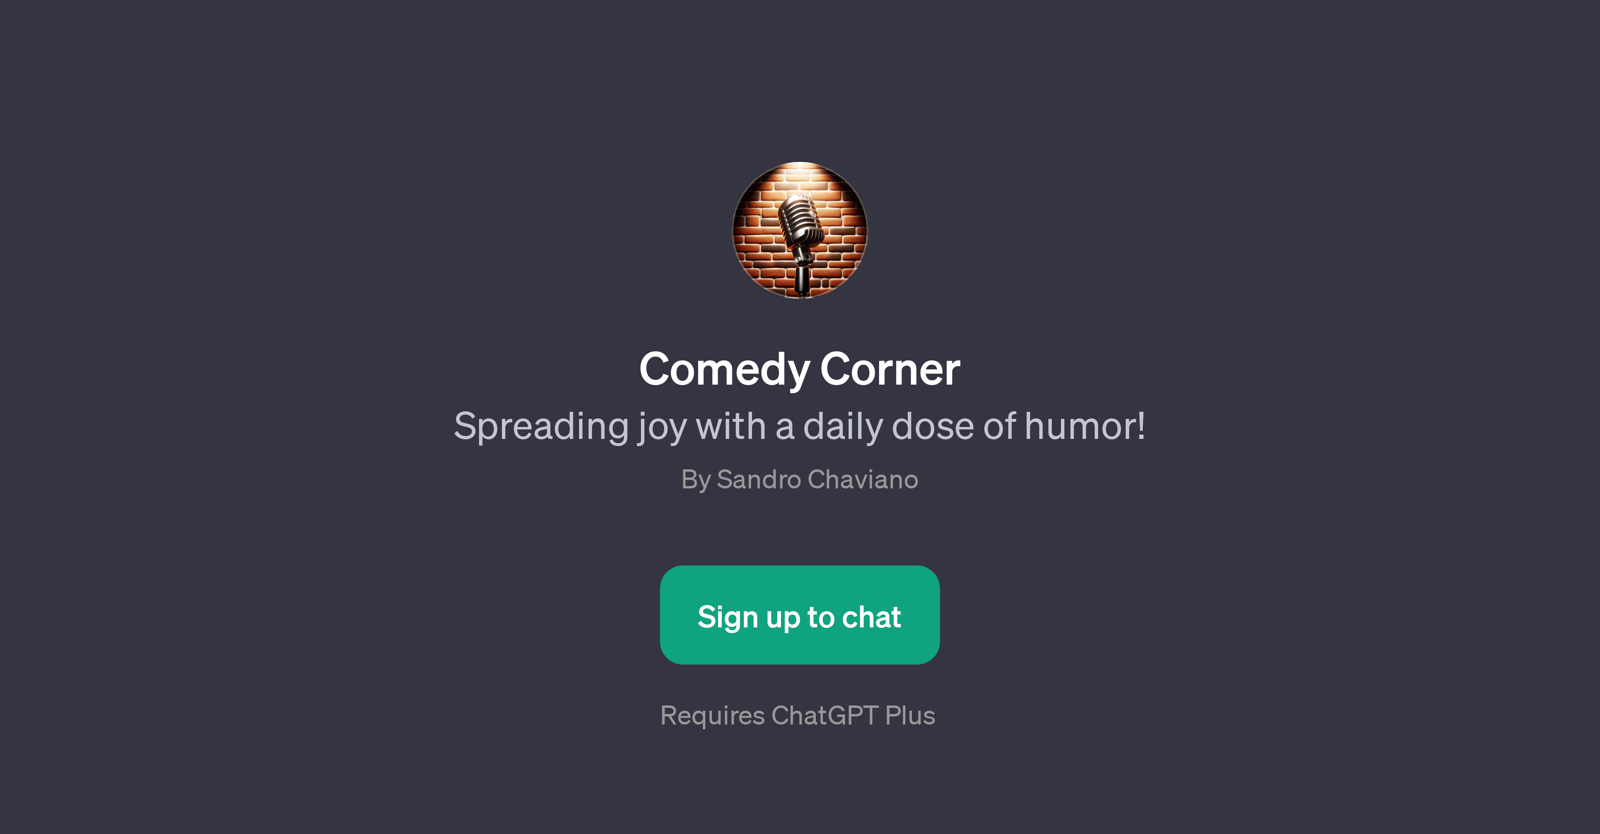 Comedy Corner website